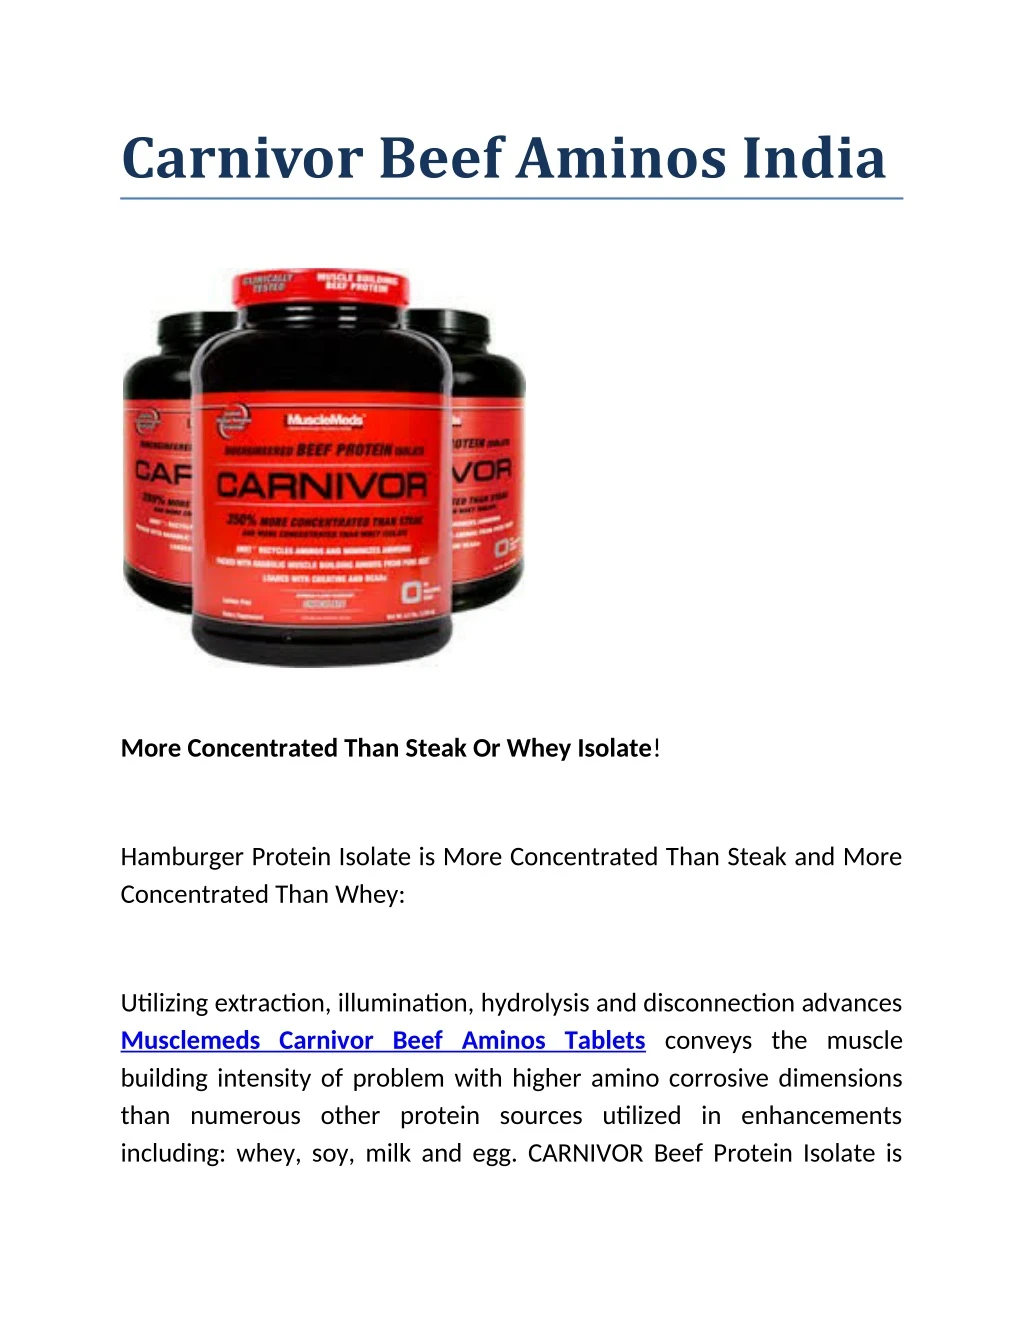 carnivor beef aminos india